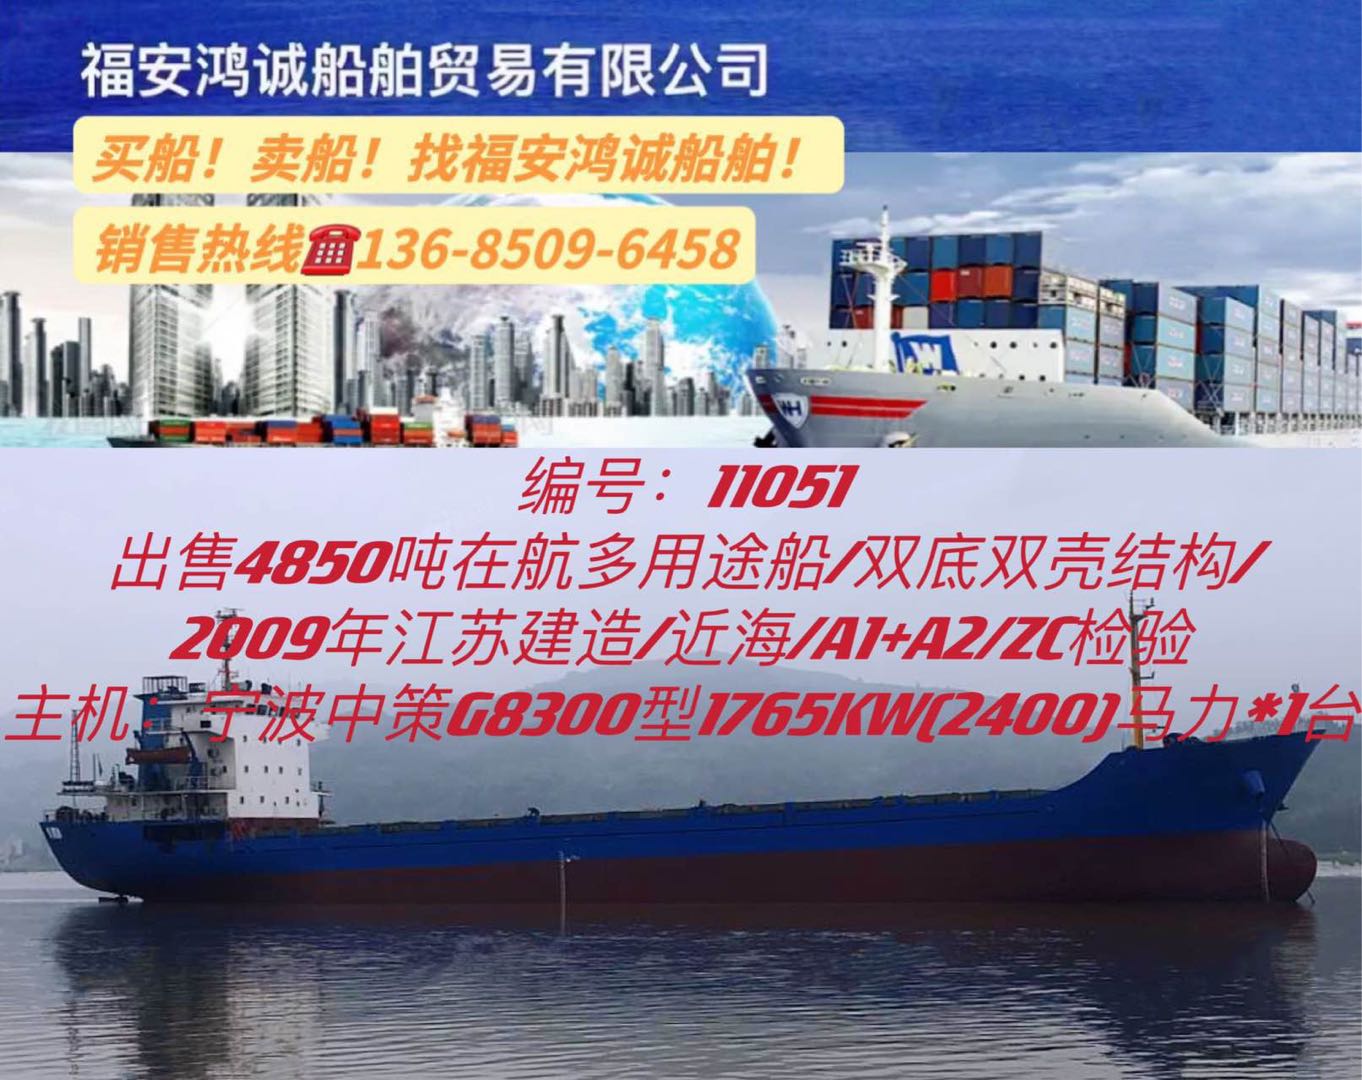 降价出售09年4850吨多用途船